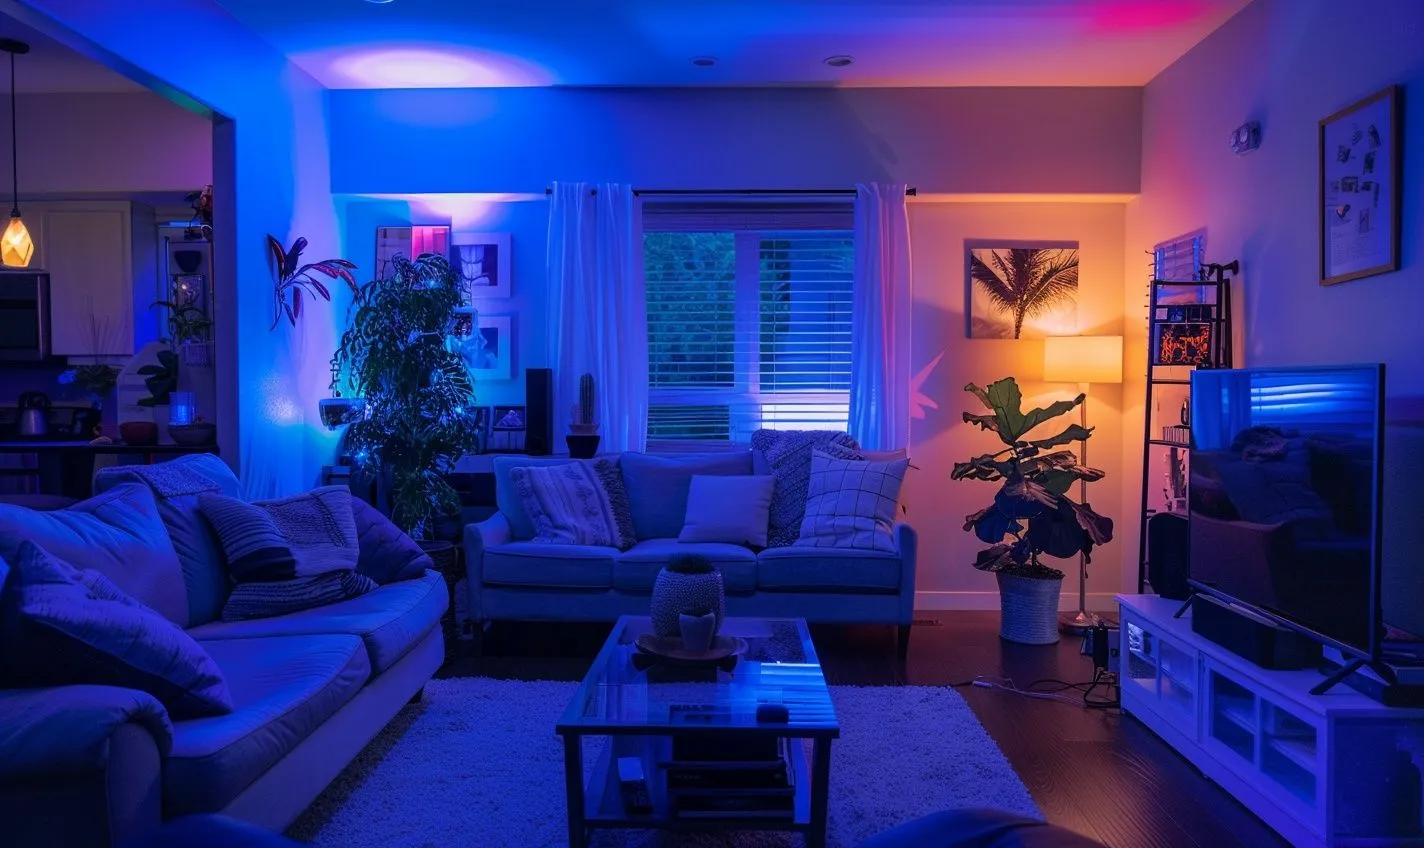 Benefits of Installing LED Lights